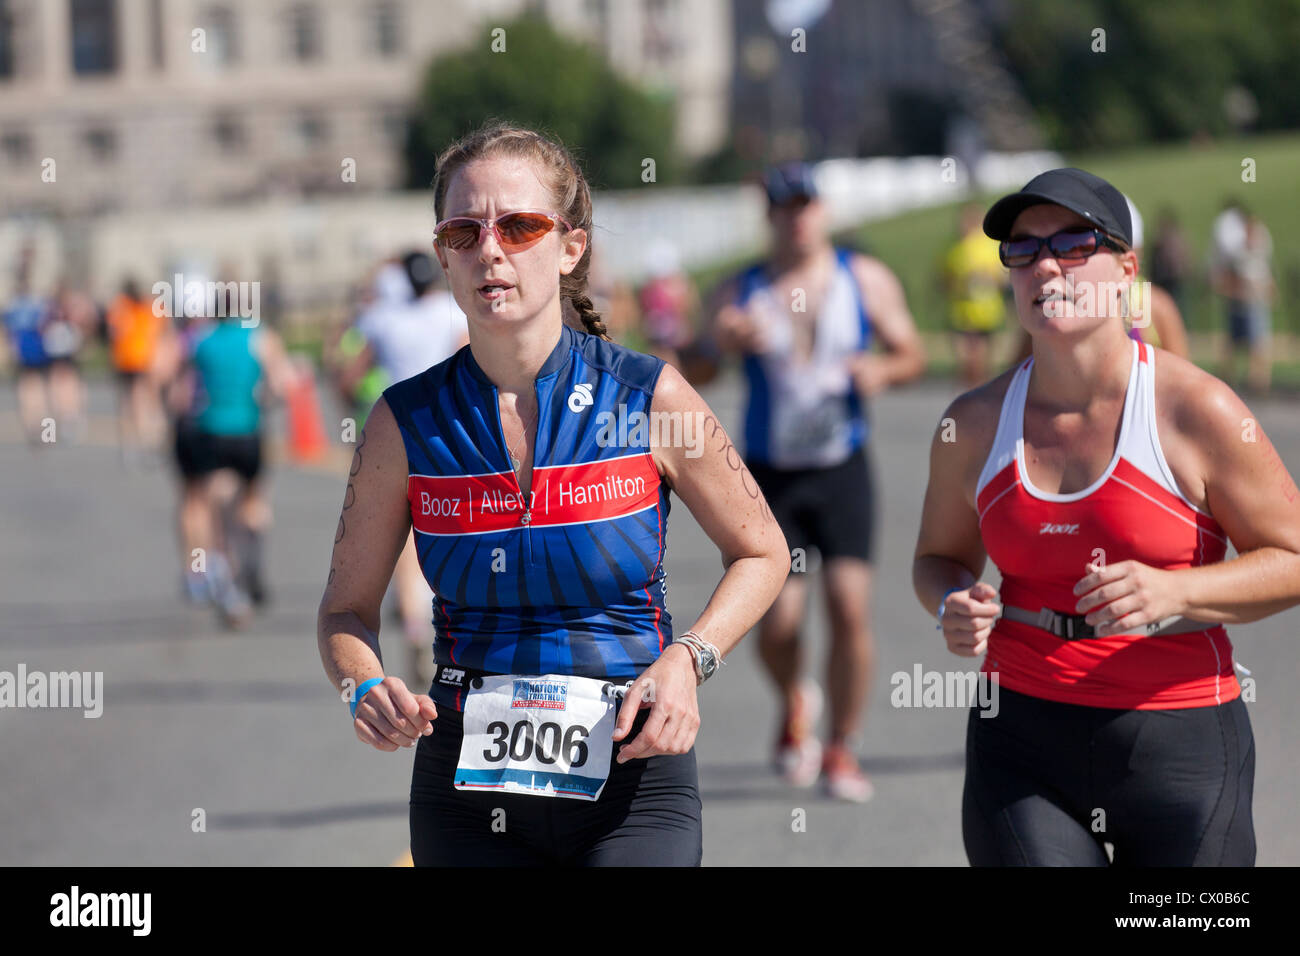 Weibliche Fahrer in einen Marathon laufen Stockfoto